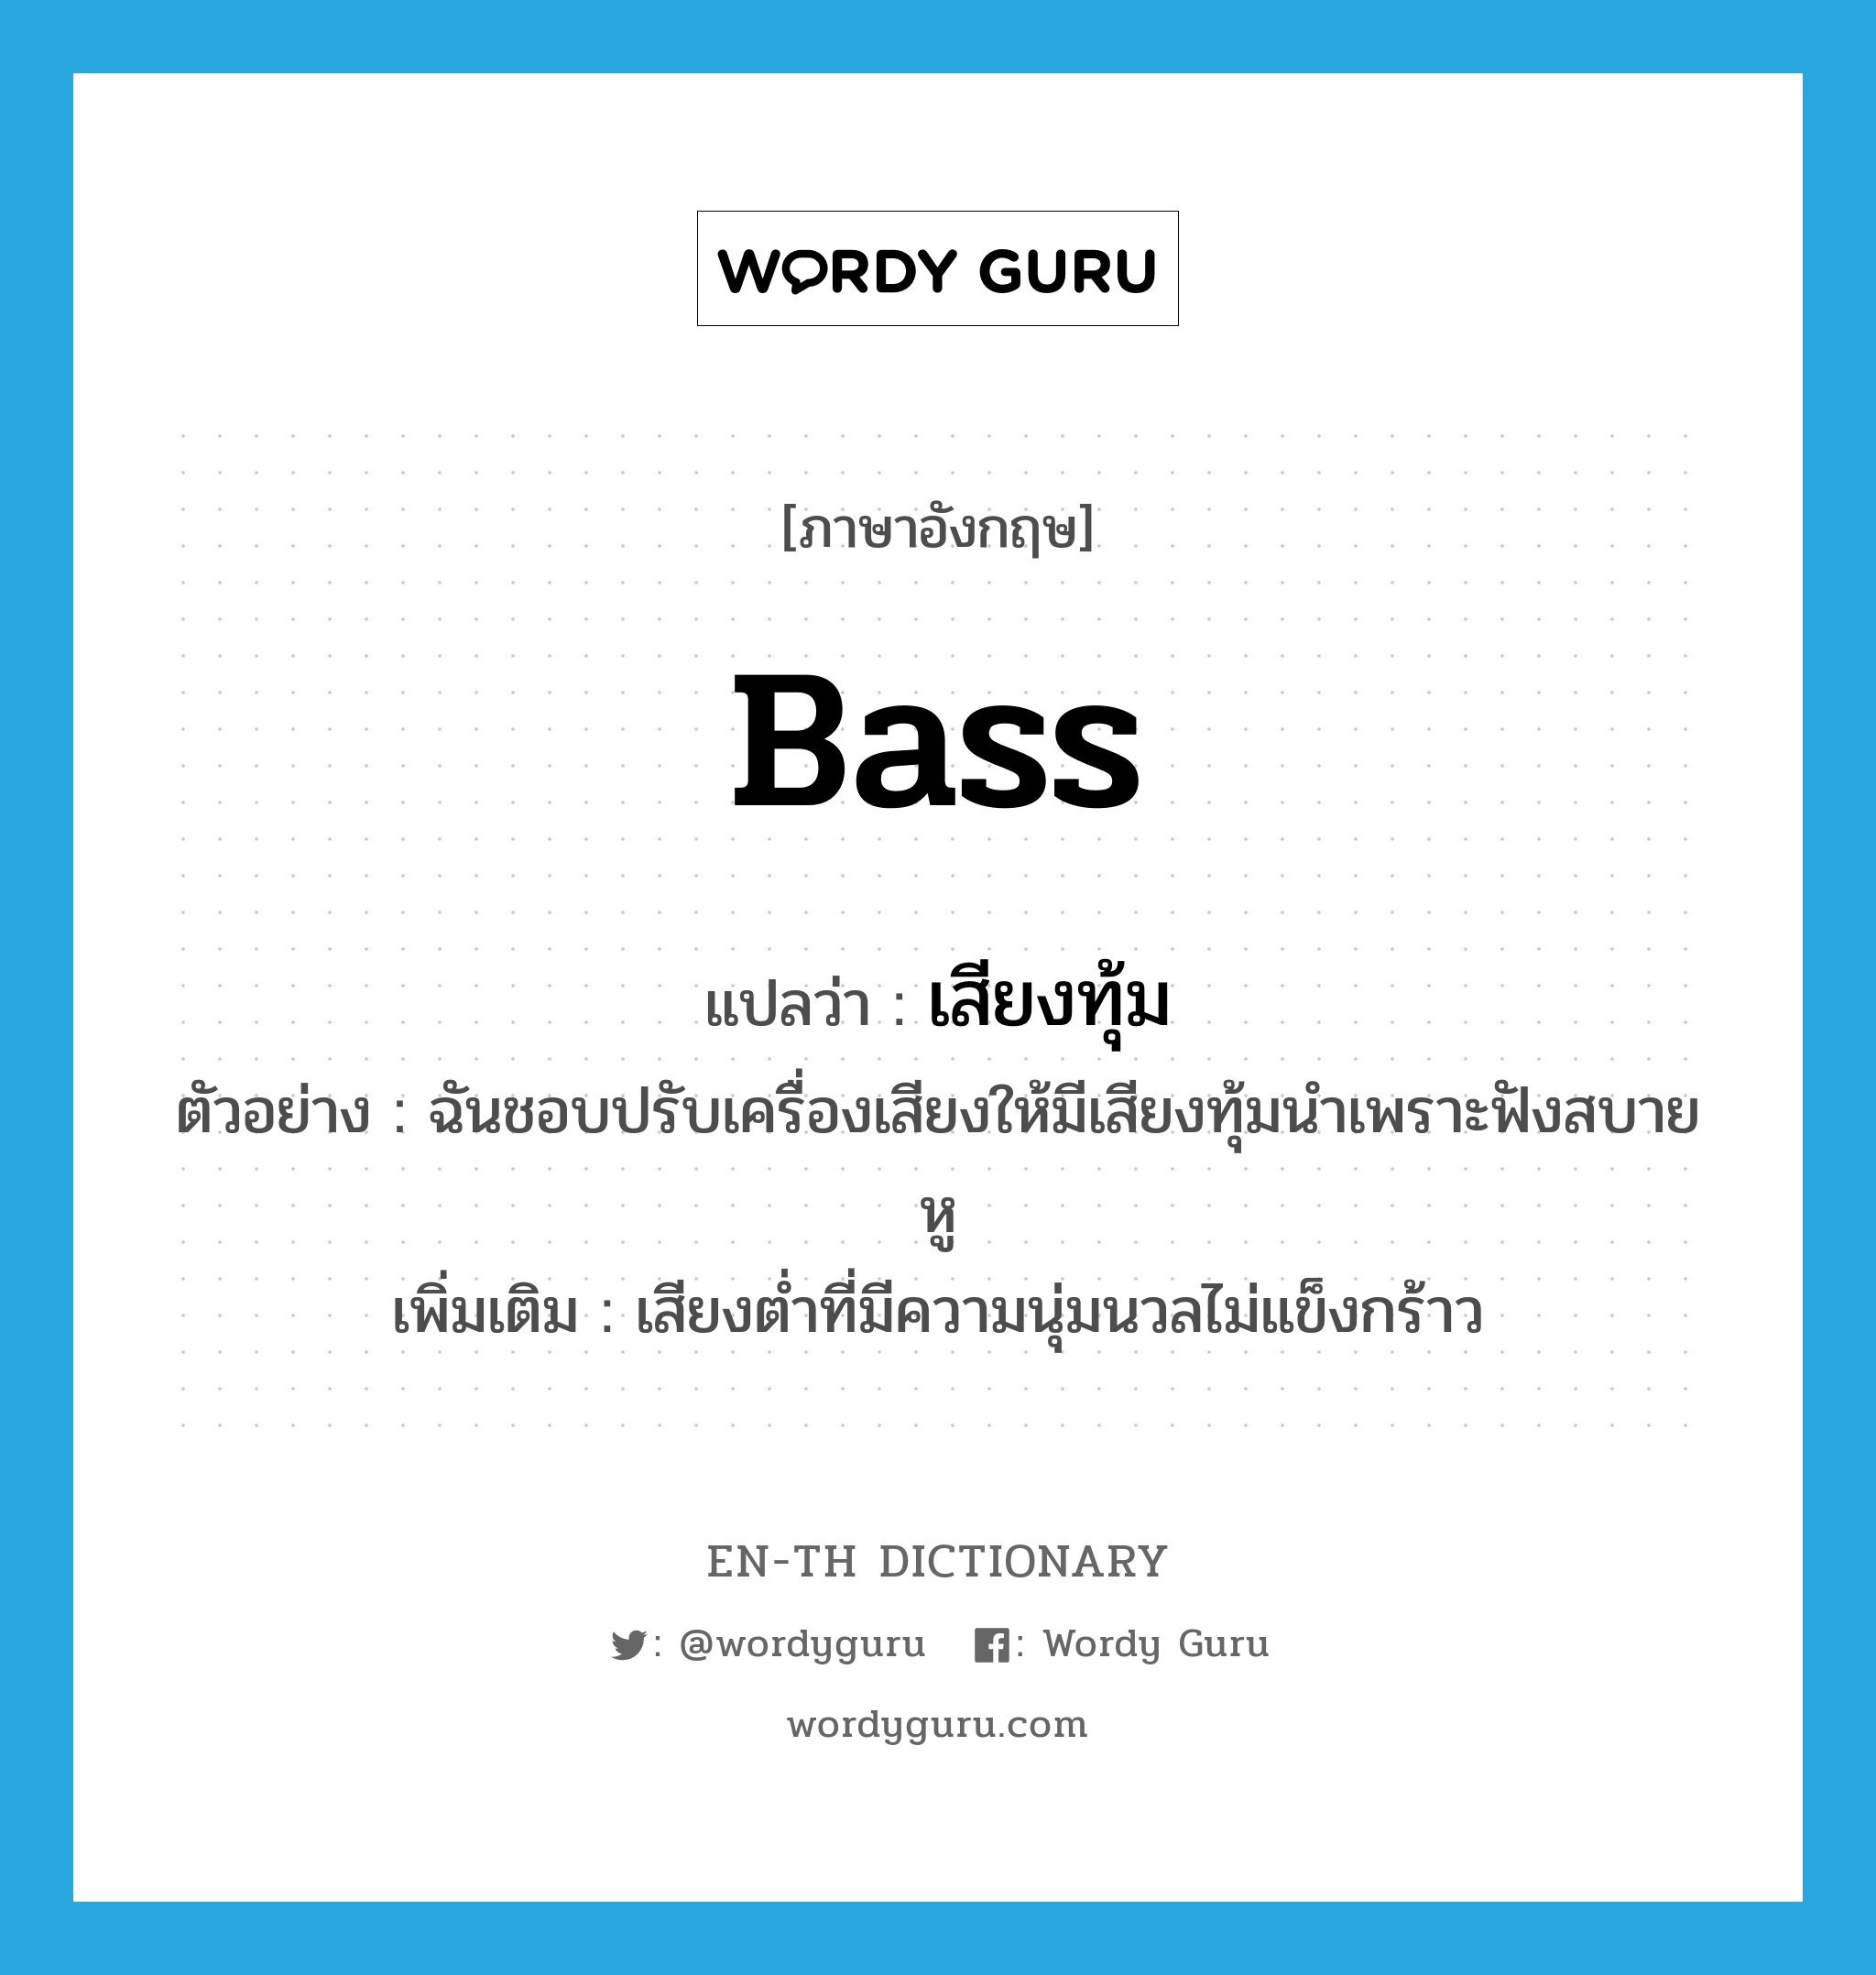 bass แปลว่า?, คำศัพท์ภาษาอังกฤษ bass แปลว่า เสียงทุ้ม ประเภท N ตัวอย่าง ฉันชอบปรับเครื่องเสียงให้มีเสียงทุ้มนำเพราะฟังสบายหู เพิ่มเติม เสียงต่ำที่มีความนุ่มนวลไม่แข็งกร้าว หมวด N